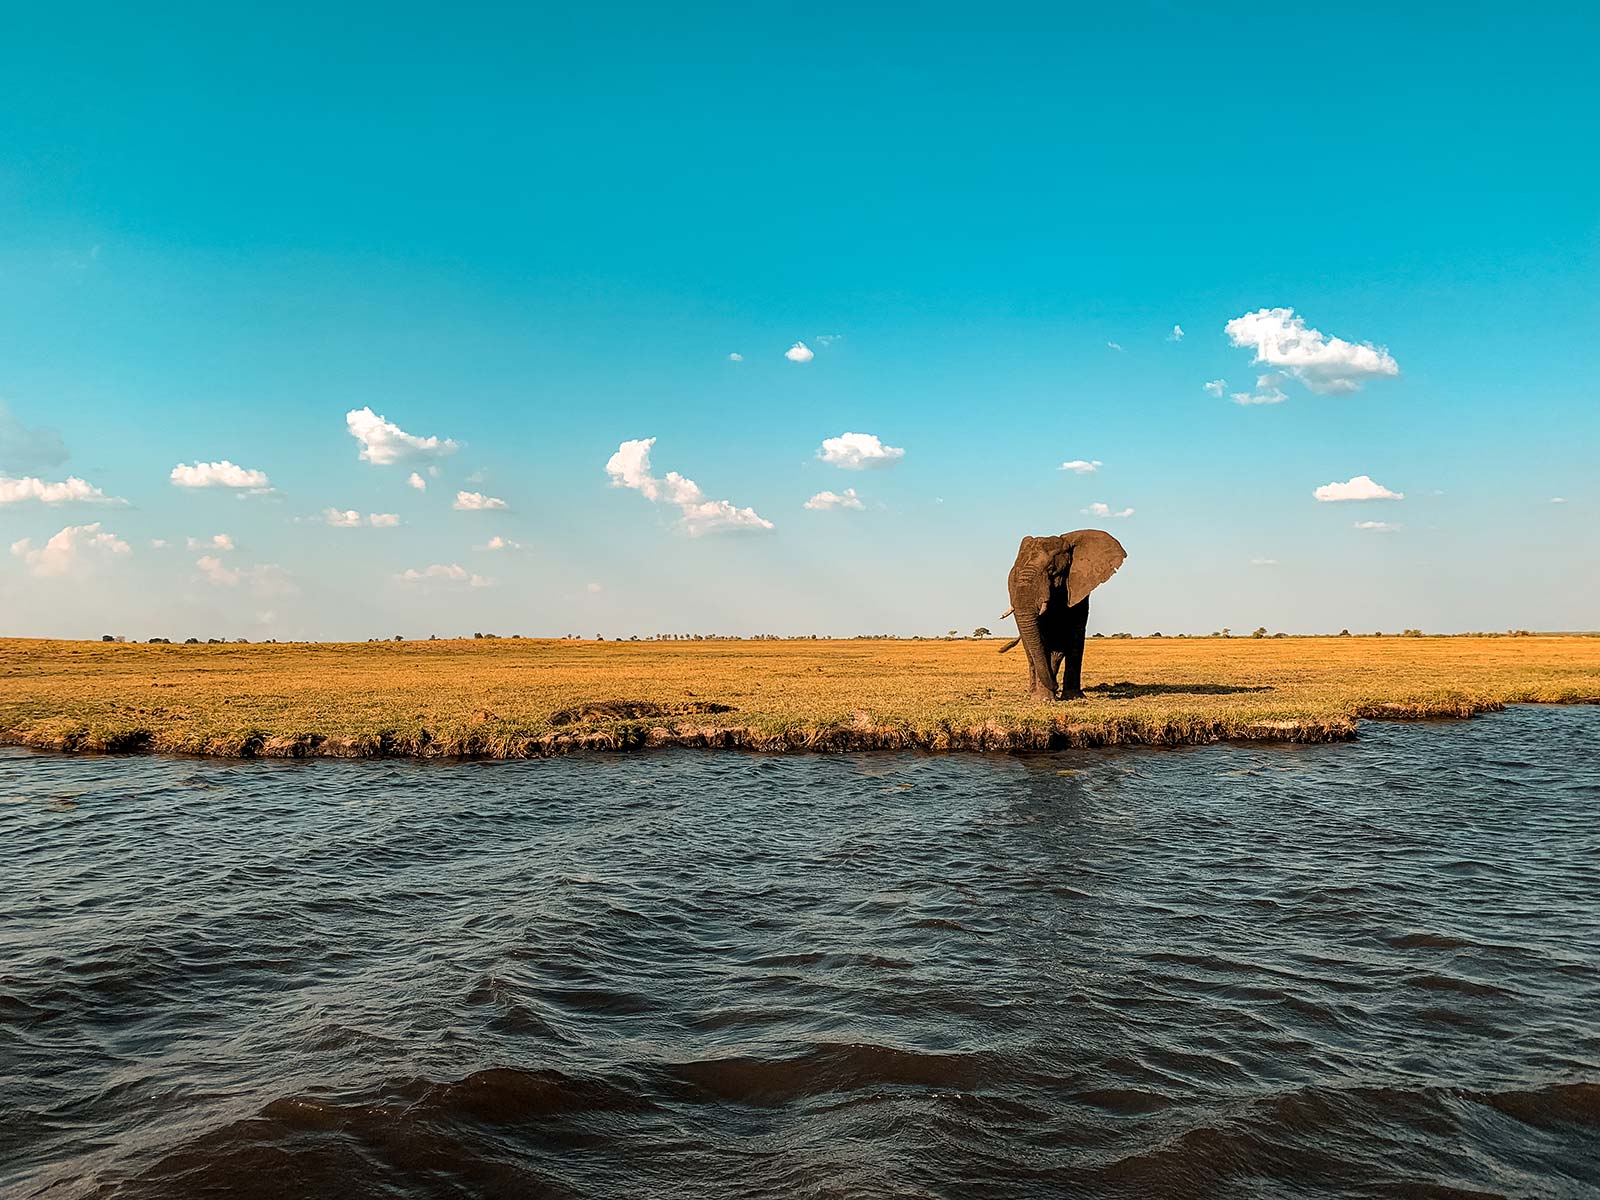 Elephant at Zambezi River in Namibia, Africa. Kasenu Village, Namibia